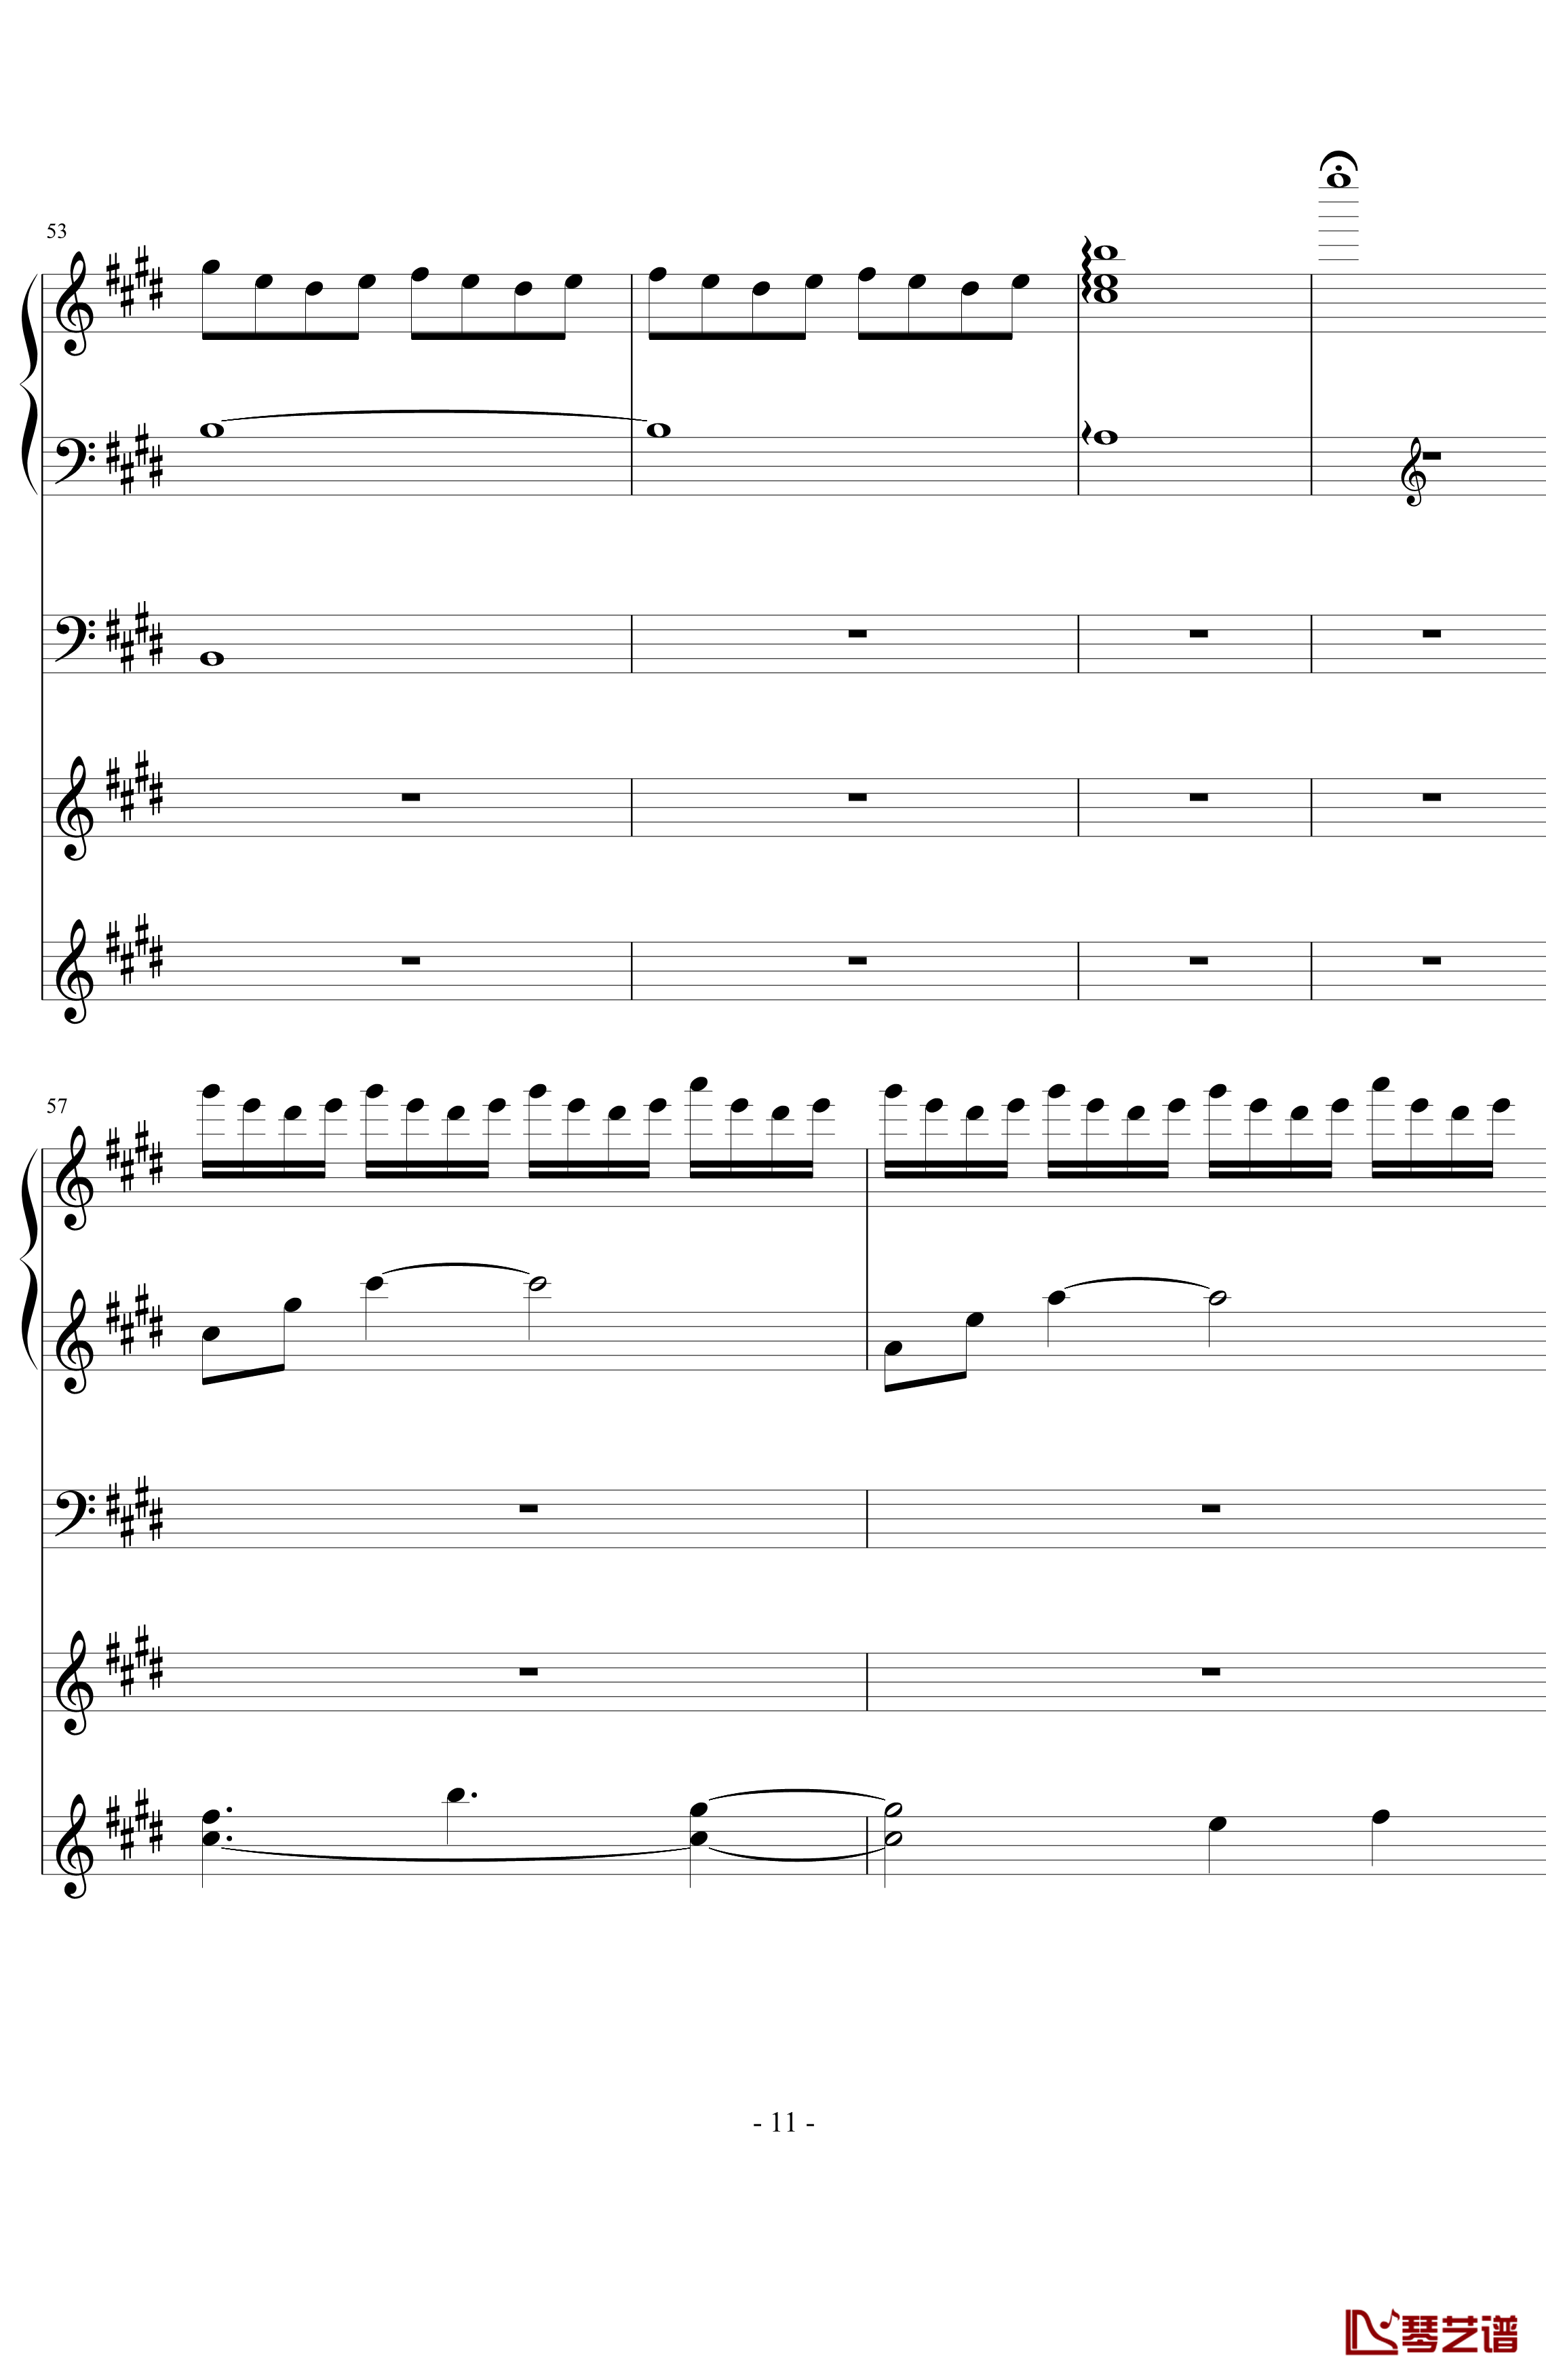 蔷薇列车钢琴谱-钢琴+管弦混音-花之祭11